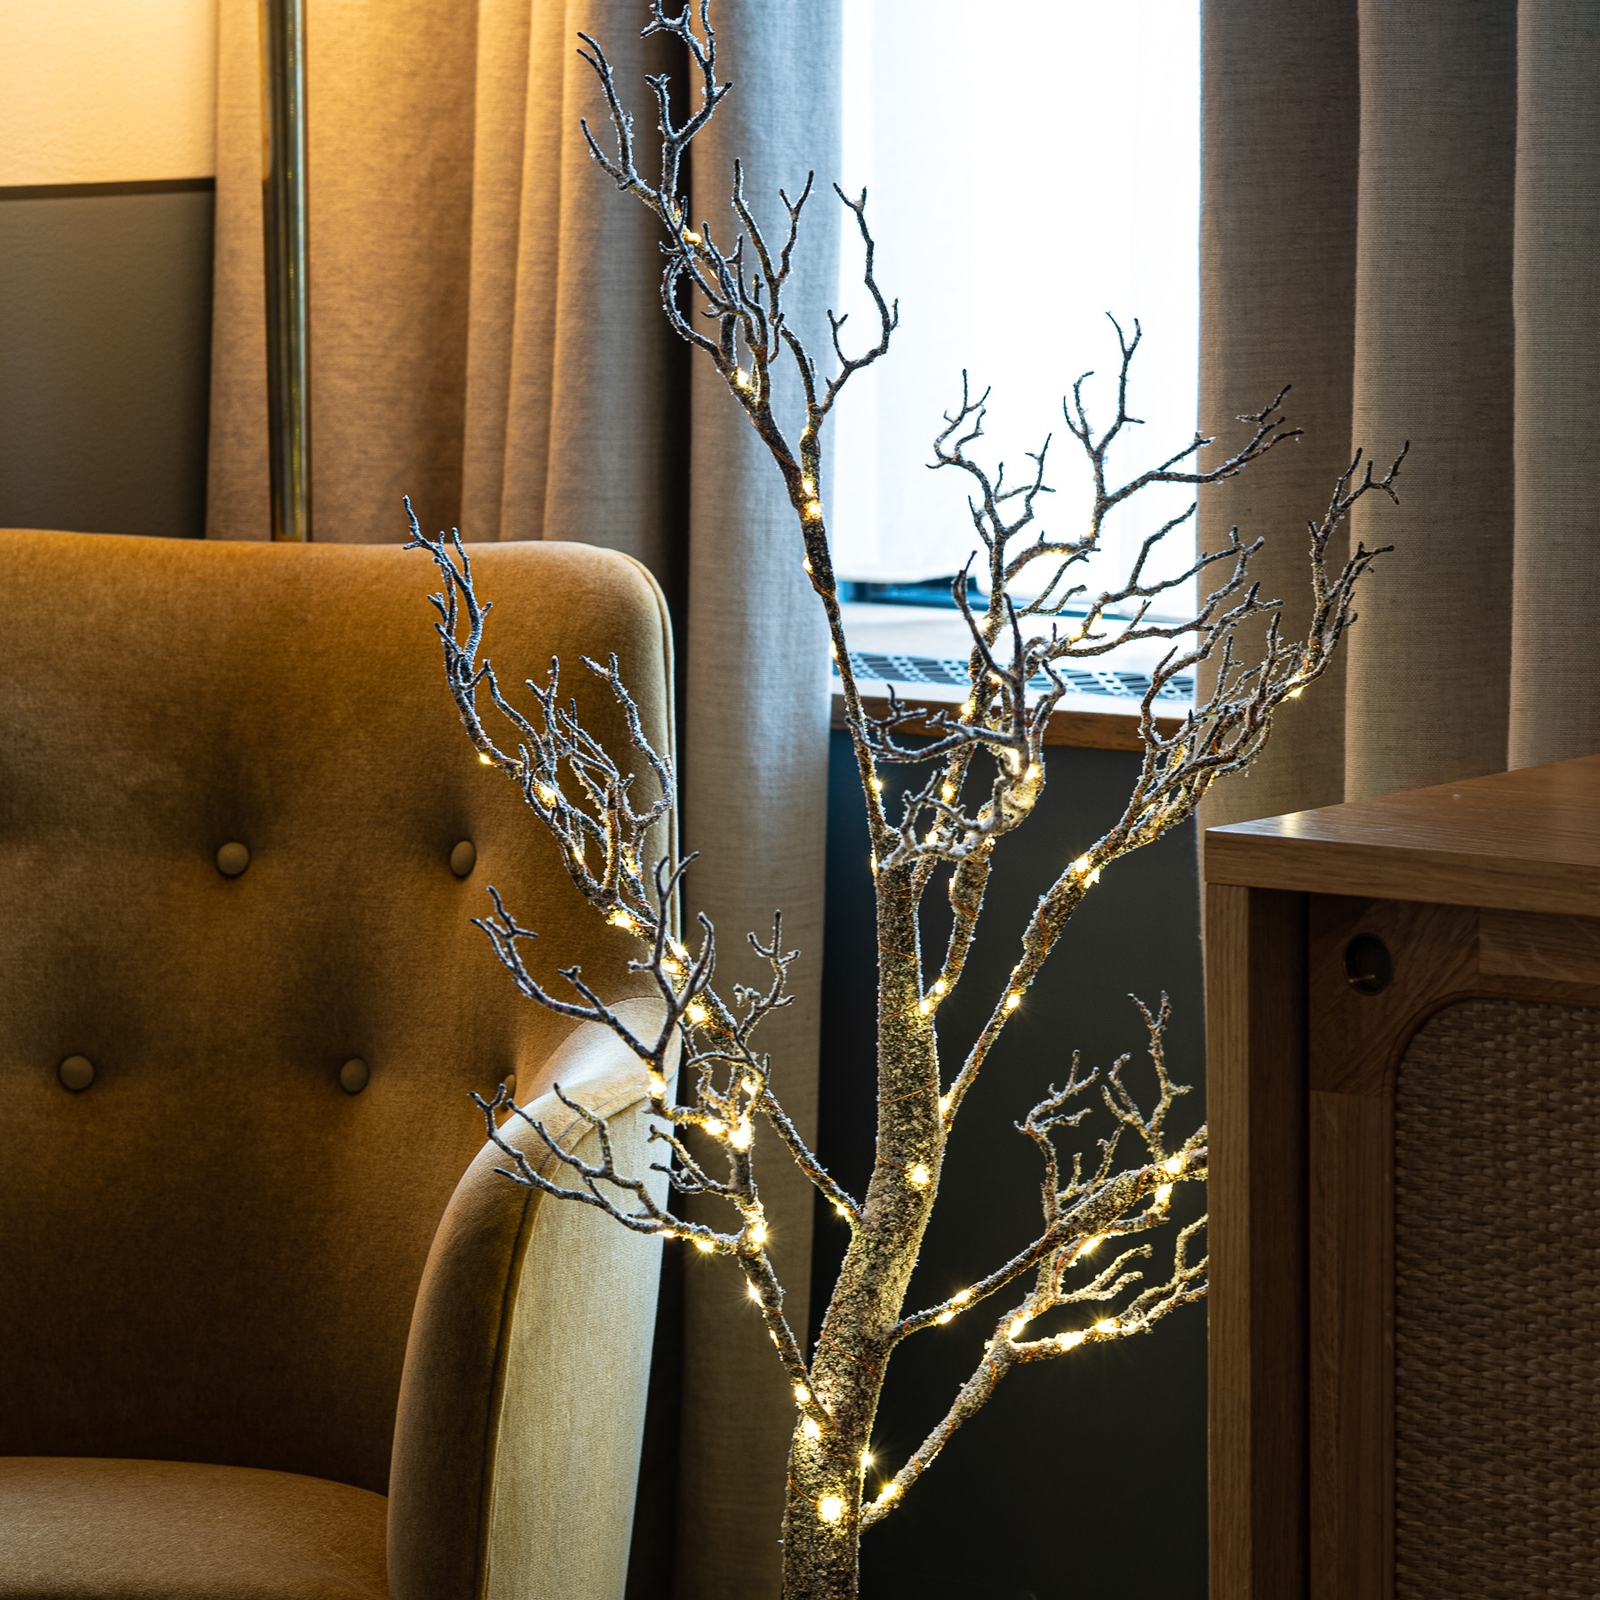 Tora Tree LED koks, brūns/balts, sniegots